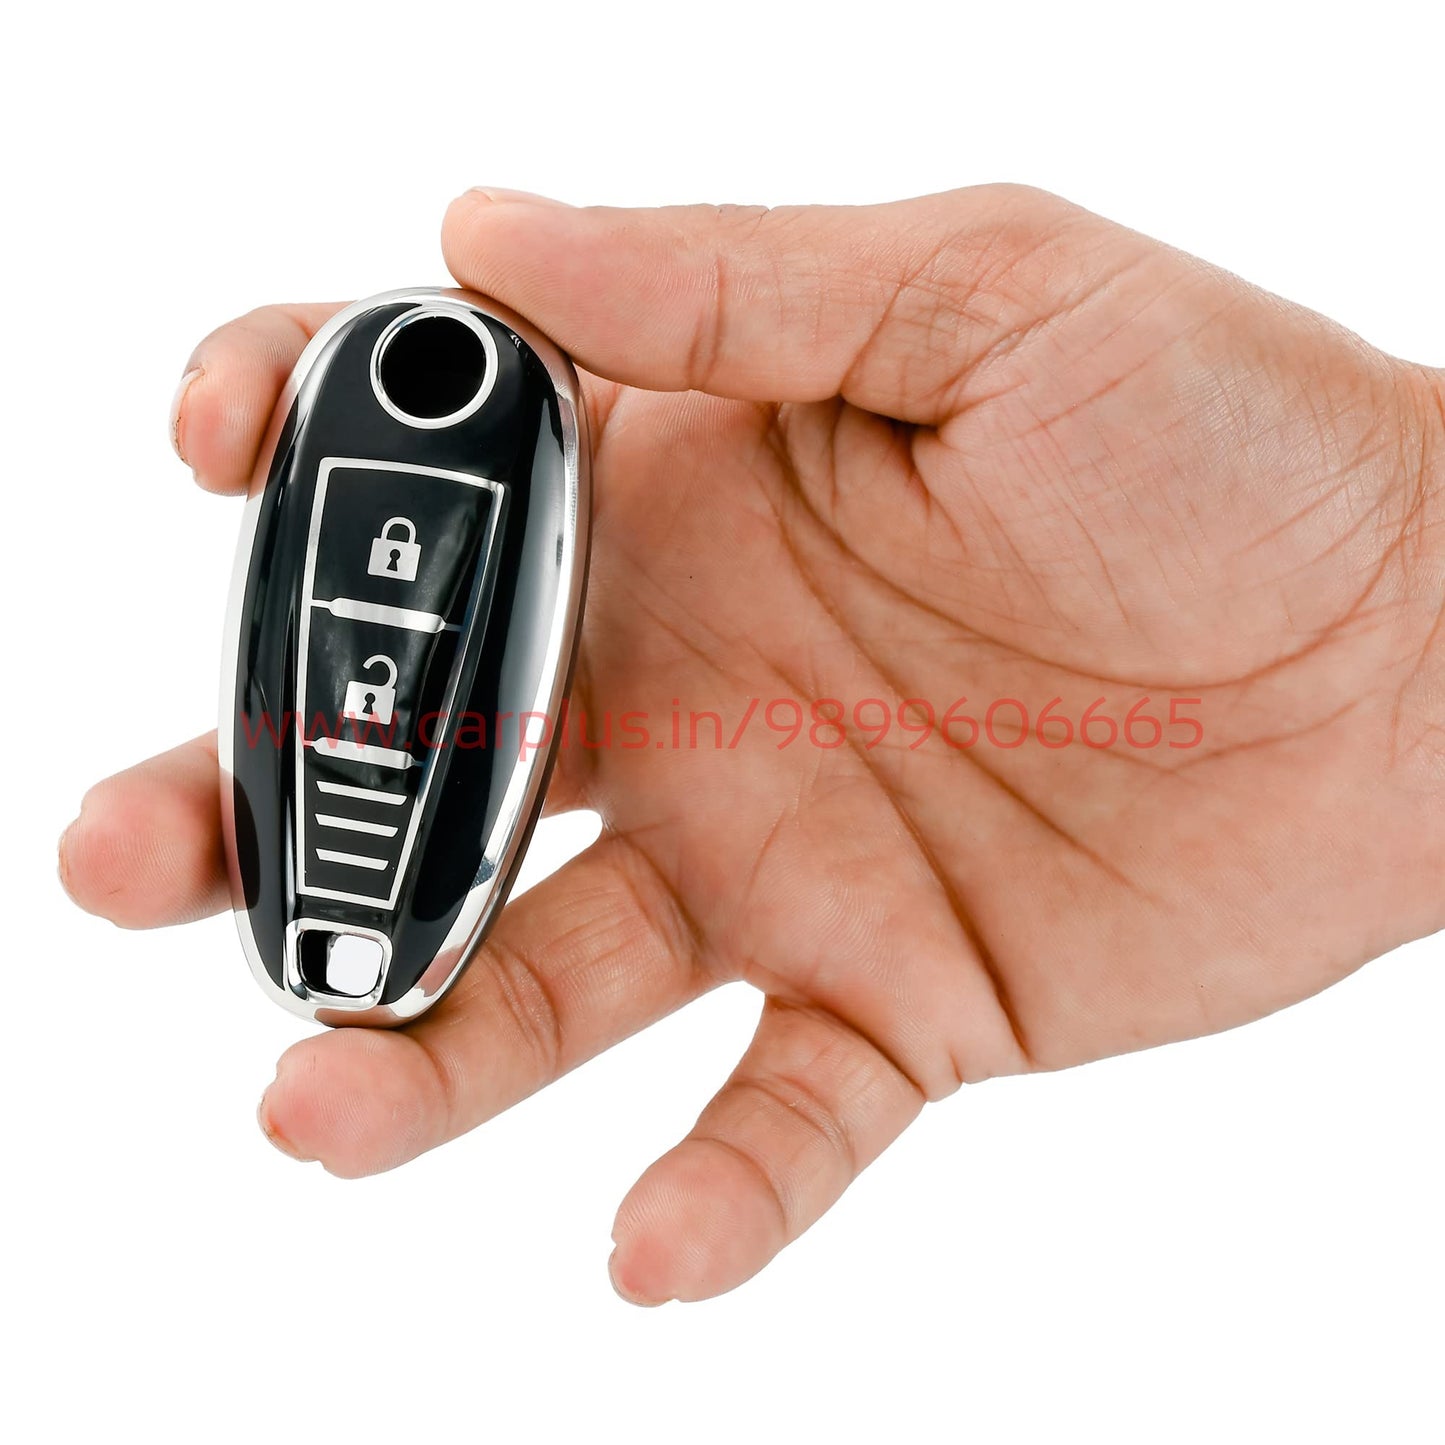 
                  
                    KMH - TPU Silver Car Key Cover Compatible for Maruti Suzuki Baleno | Brezza | Swift| Ignis Compatible with 2 Button Smart Key Cover-TPU SILVER KEY COVER-KMH-KEY COVER-BLACK-CARPLUS
                  
                